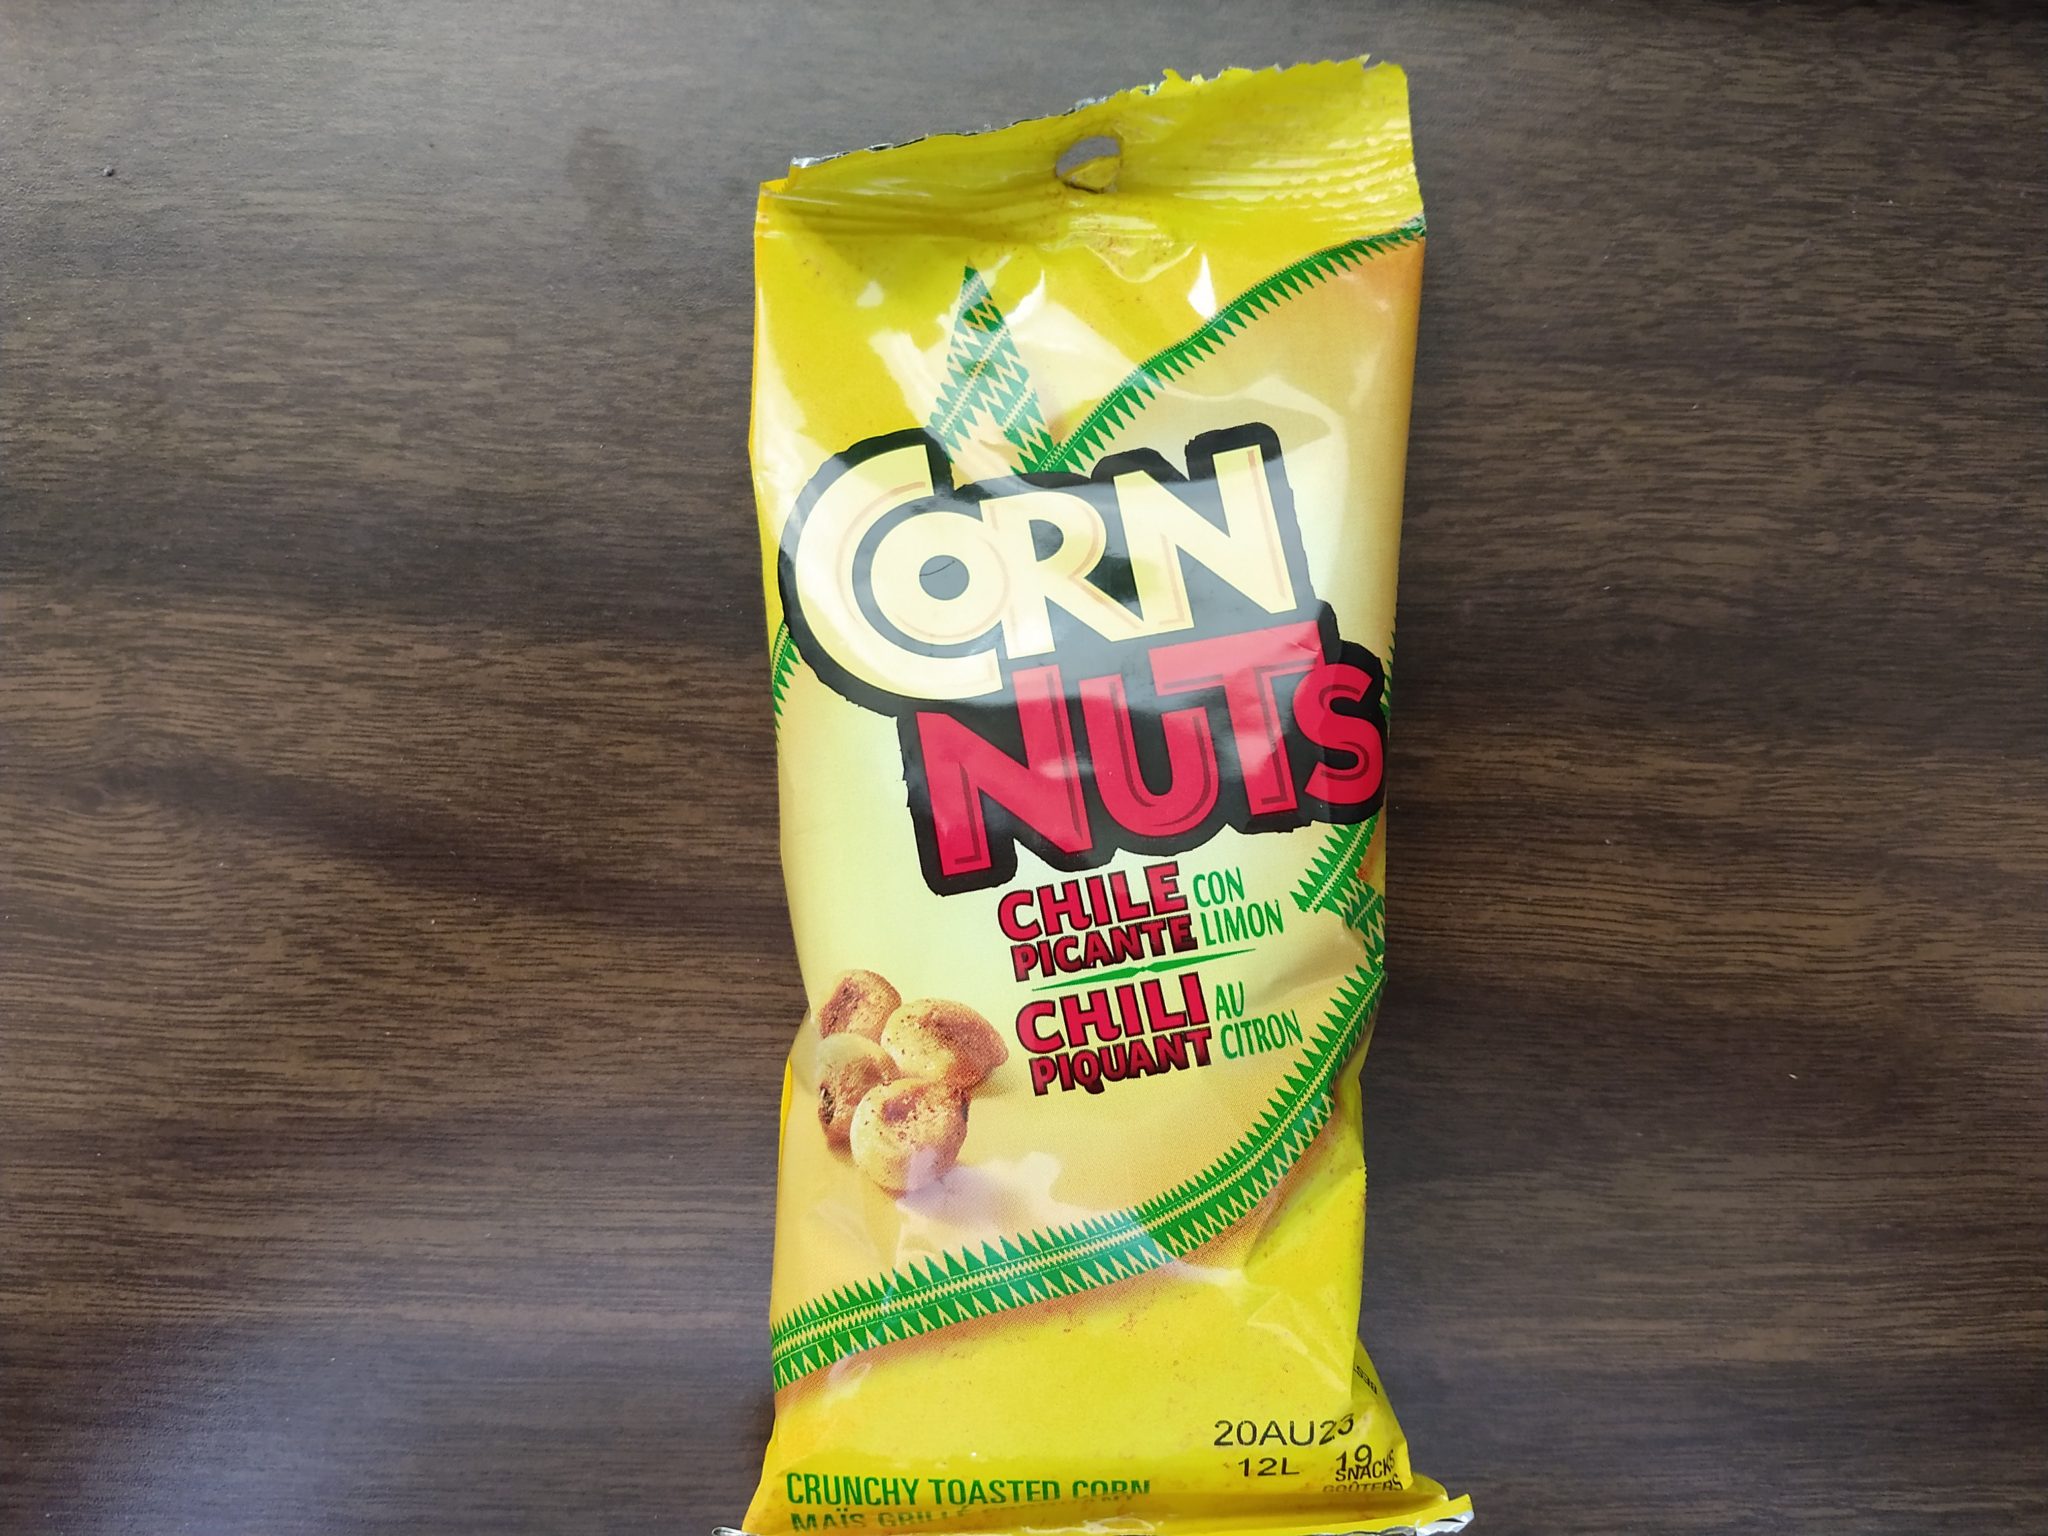 Corn Nuts – Chile Picante con Limon